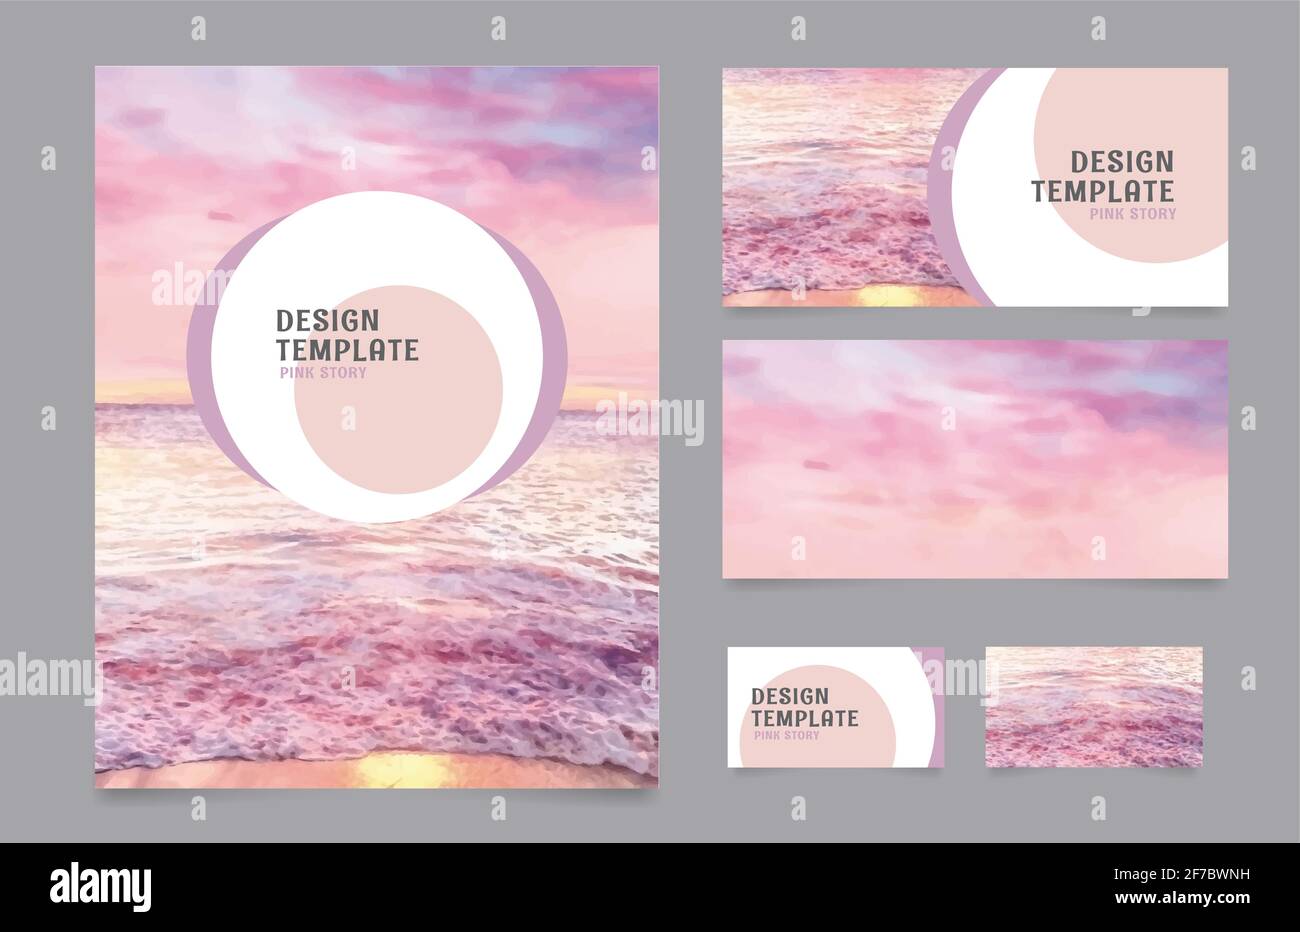 Presentazione identità aziendale design, mare all'alba, delicato sfondo rosa acquerello Illustrazione Vettoriale